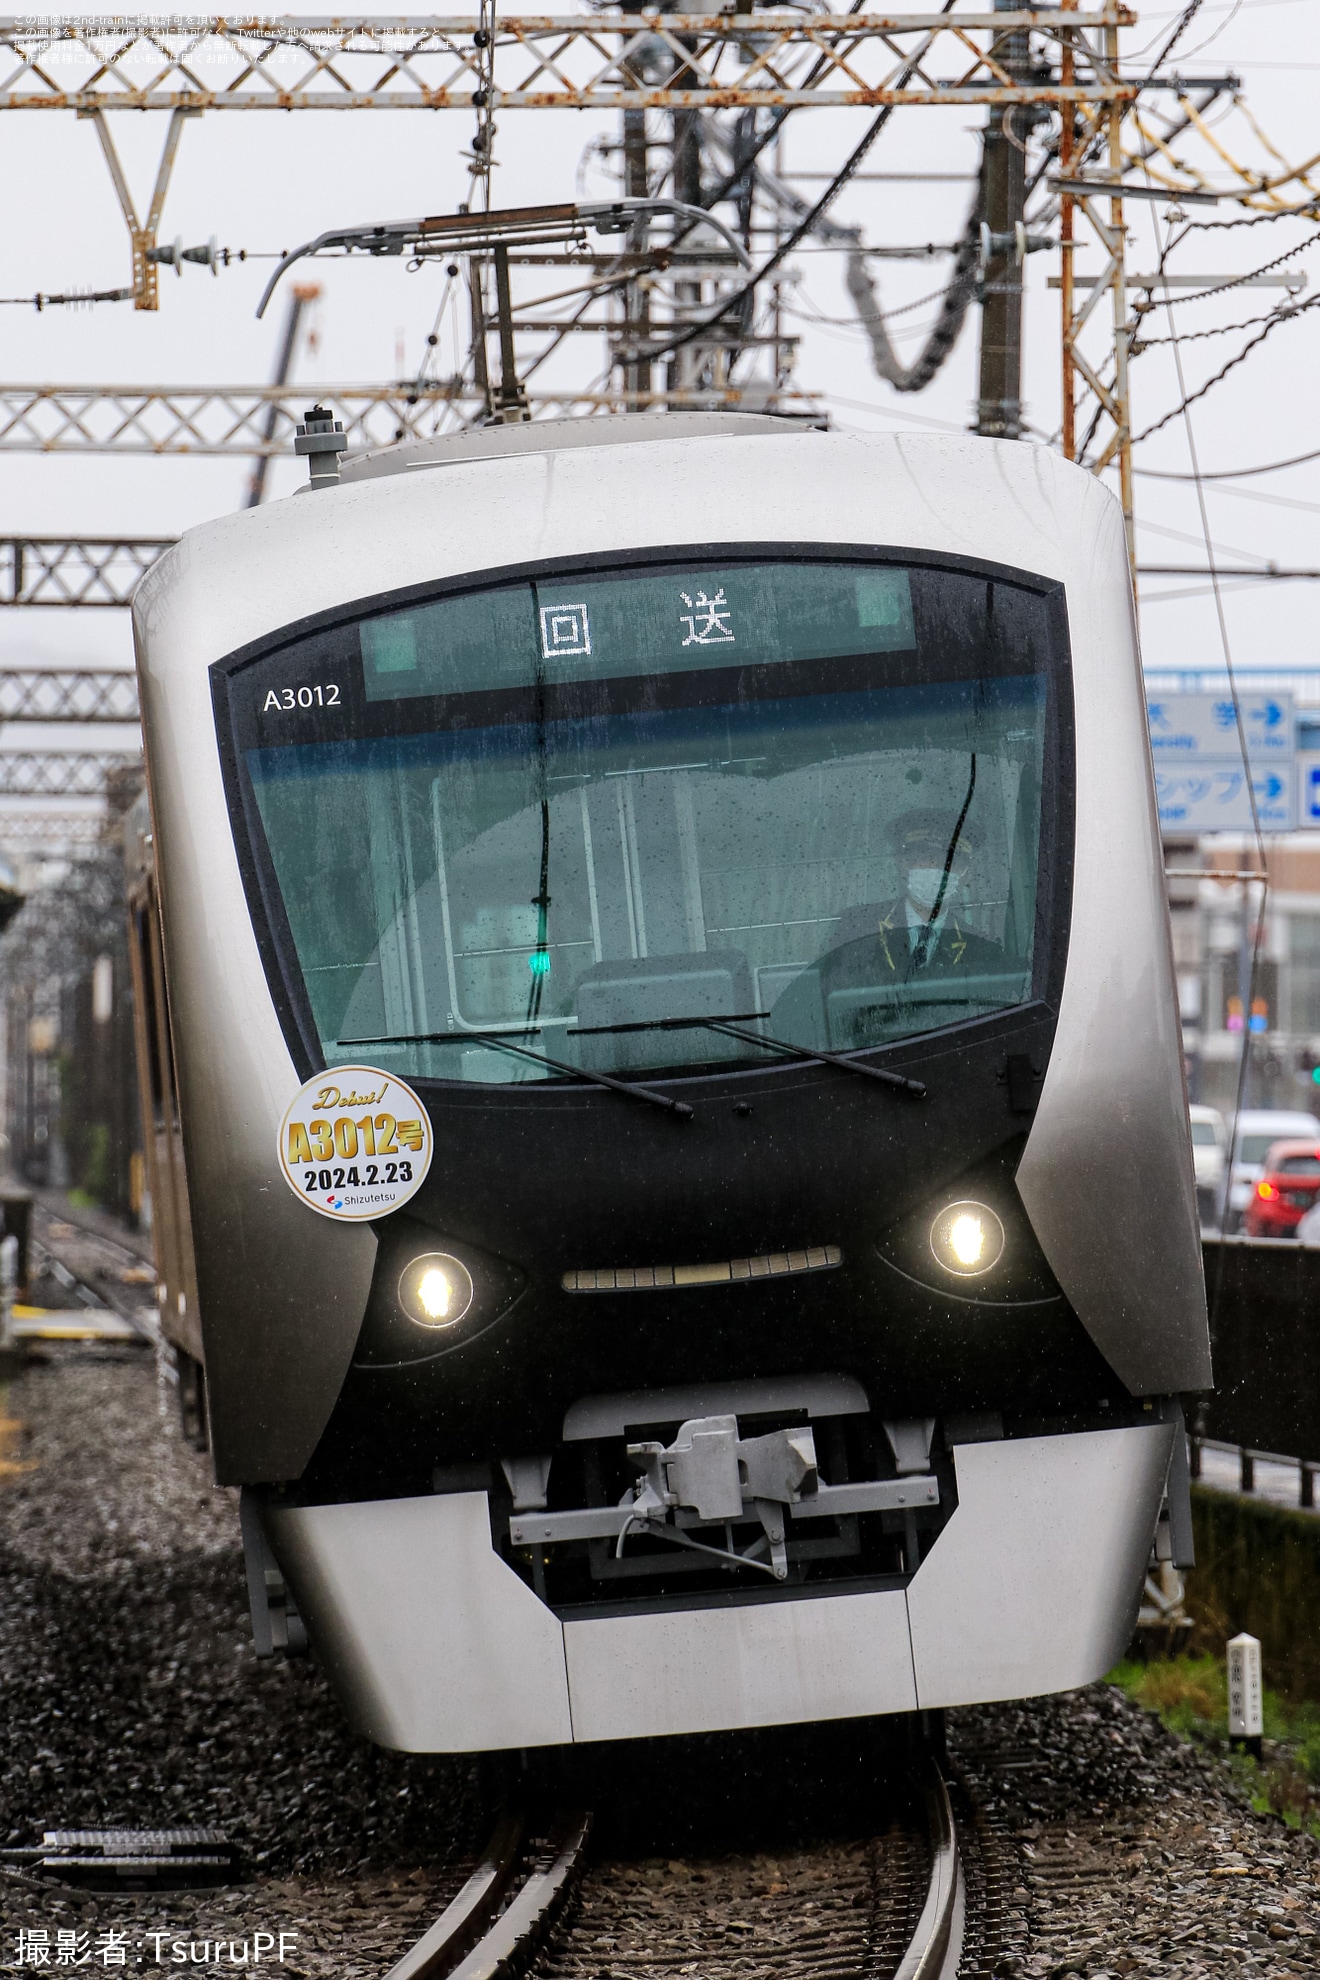 【静鉄】新型車両A3012号営業運転開始の拡大写真